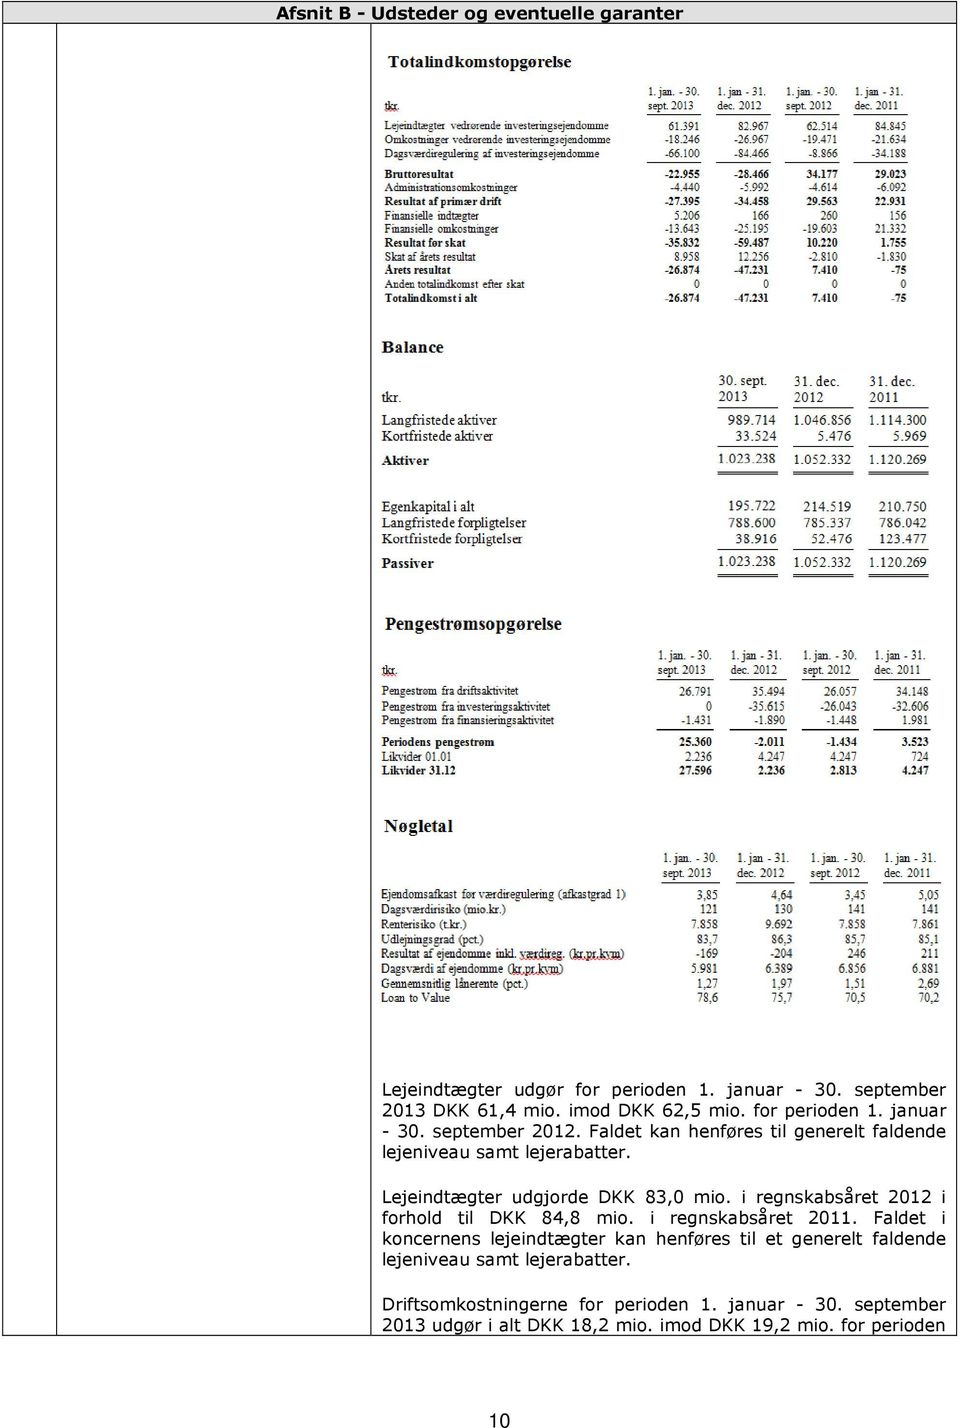 Lejeindtægter udgjorde DKK 8,0 mio. i regnskabsåret 01 i forhold til DKK 84,8 mio. i regnskabsåret 011.